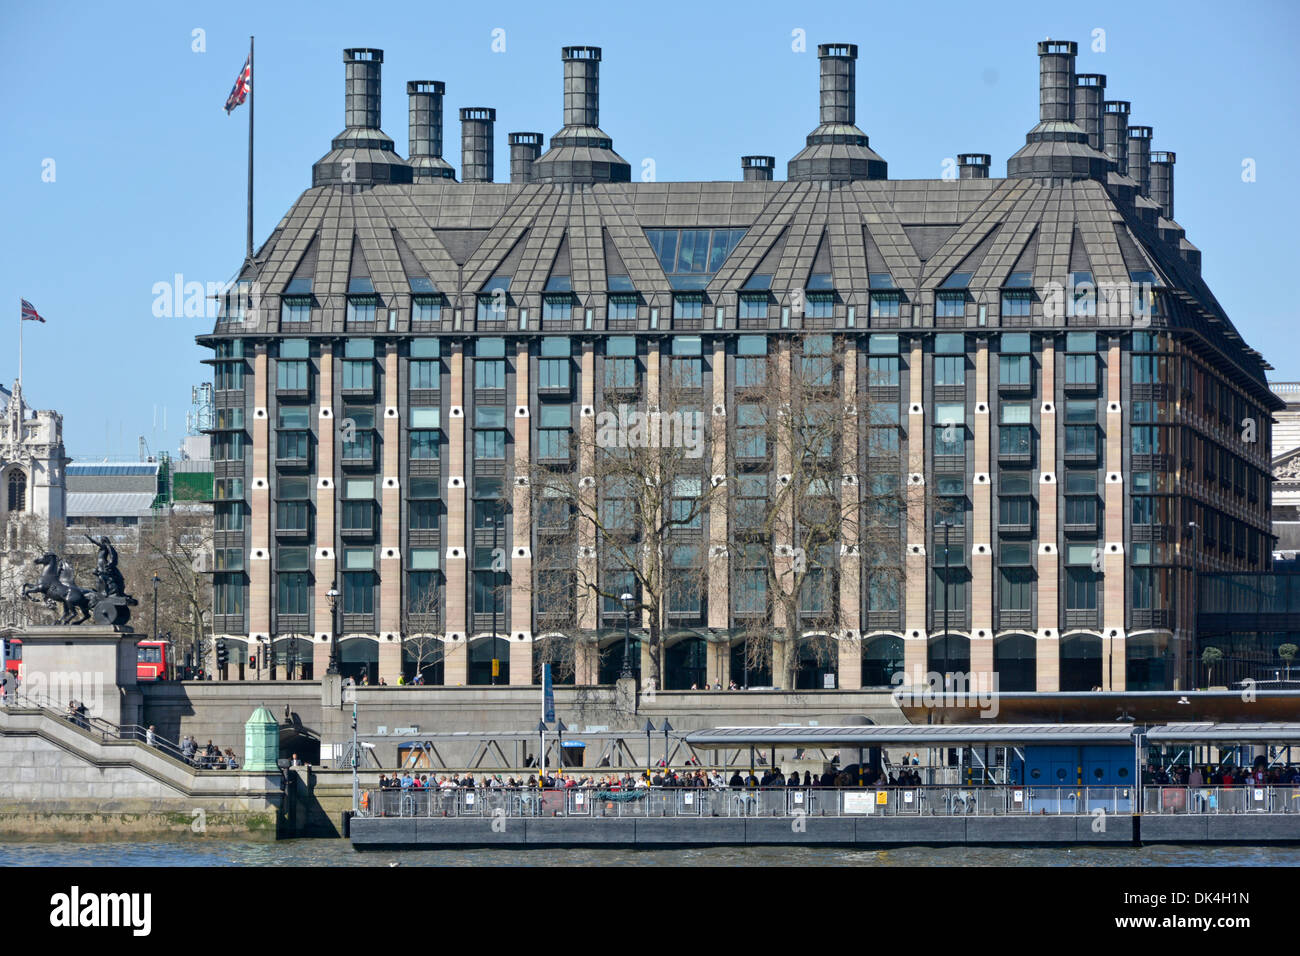 Moderno Portcullis House Palace of Westminster MPs ufficio per i membri del Parlamento britannico accanto al fiume Tamigi e Westminster Pier Londra Regno Unito Foto Stock